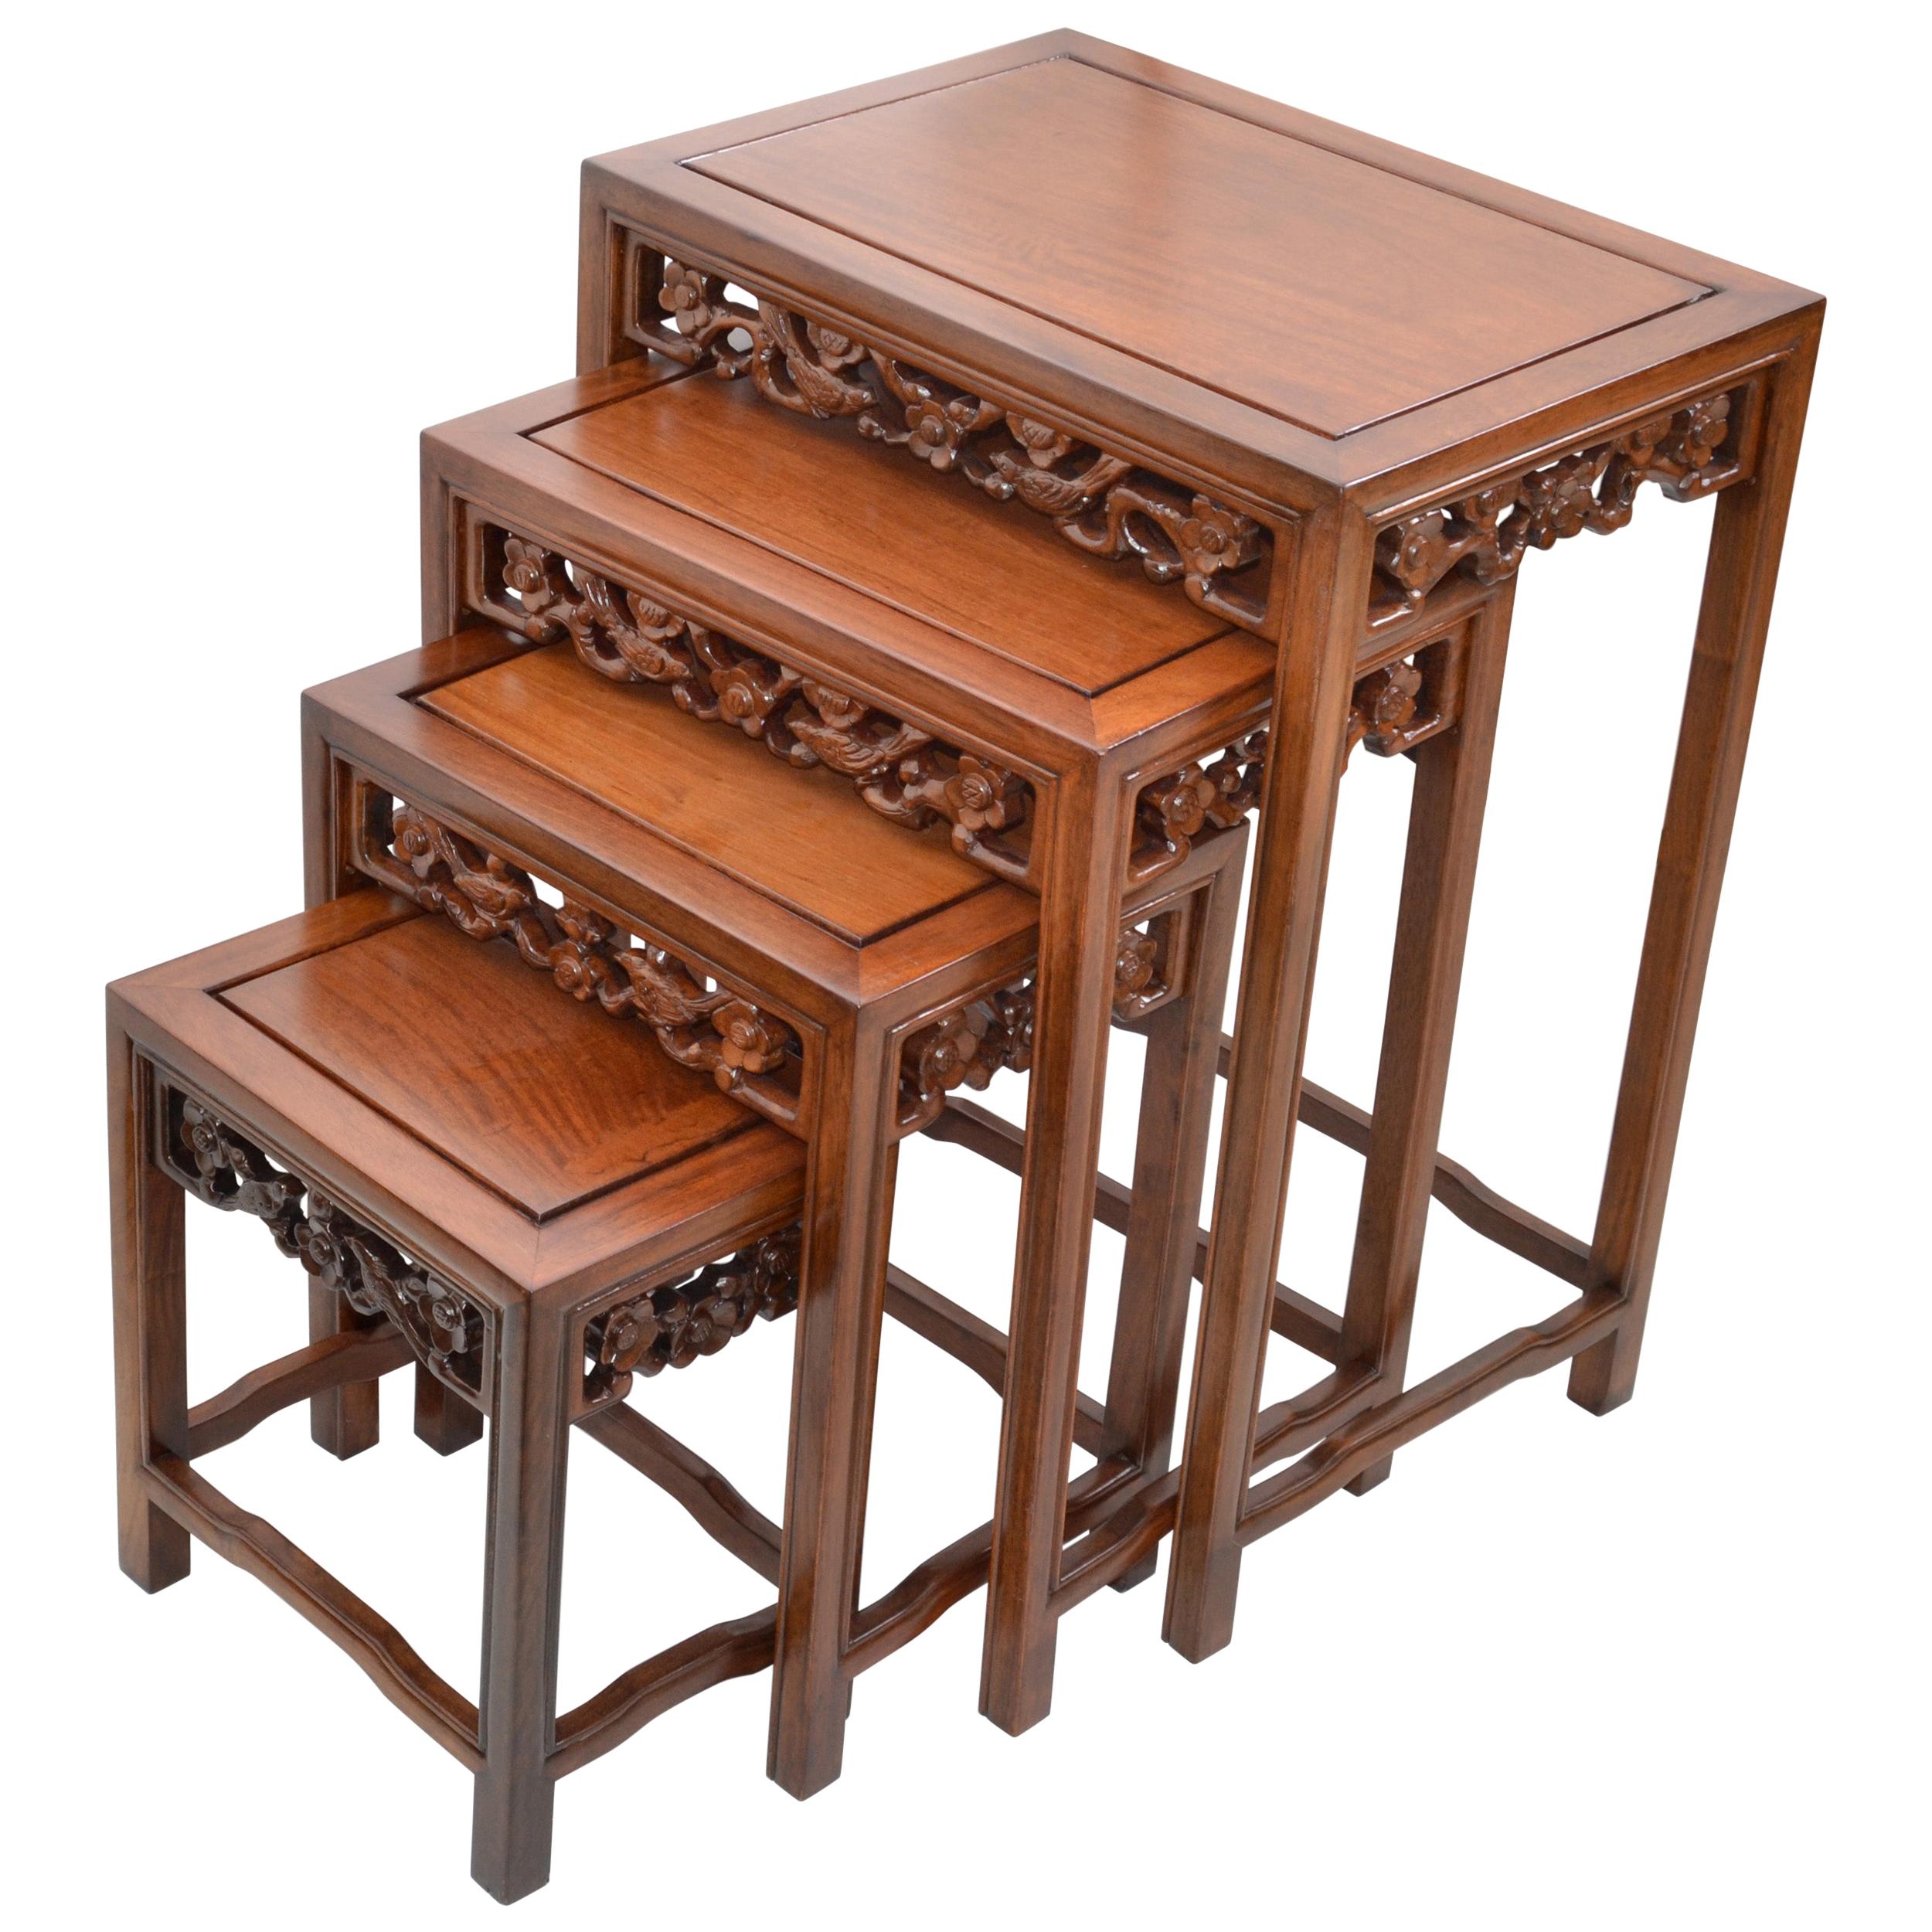 Tables gigognes ou tables empilables en bois asiatique sculptées à la main de style chinoiseries, lot de 4